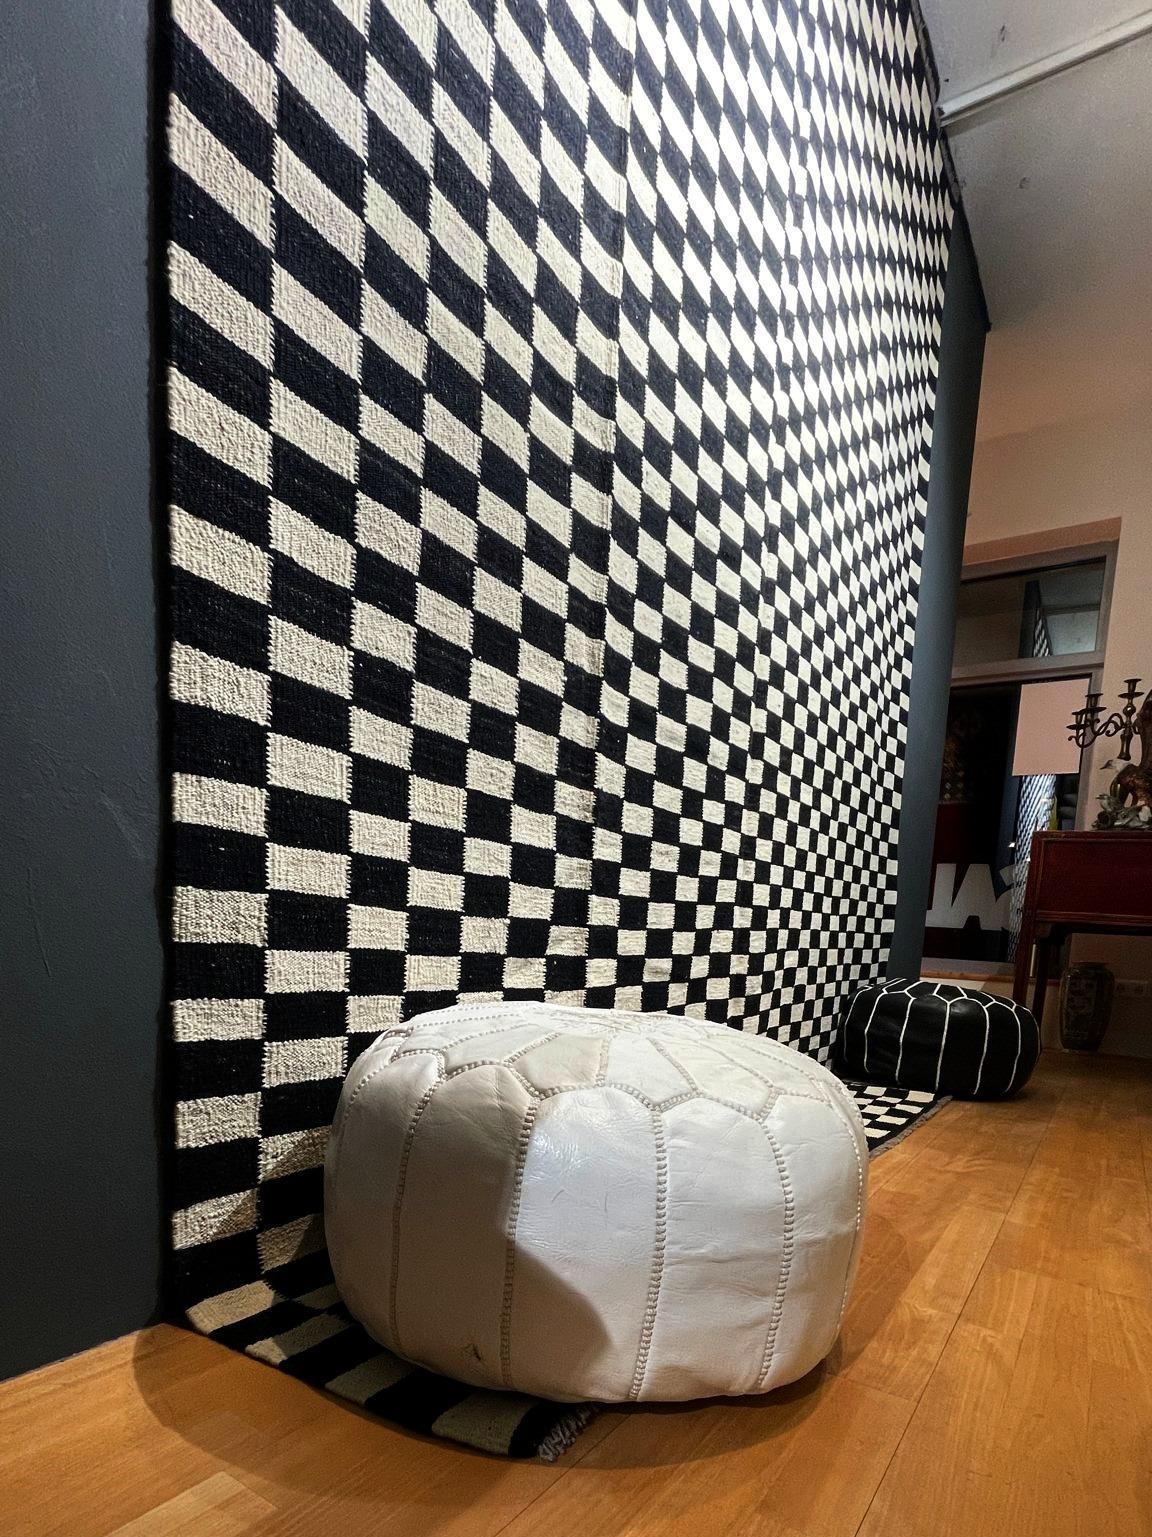 Flachgewebter Teppich Schwedischer Stil Schwarz Weiß Mazandaran Kelim Skandinavische Moderne

Dieser atemberaubende Flachgewebeteppich hat ein fantastisches Aussehen. Es ist aus feiner handgesponnener Wolle handgewebt. Die Farben sind beige /